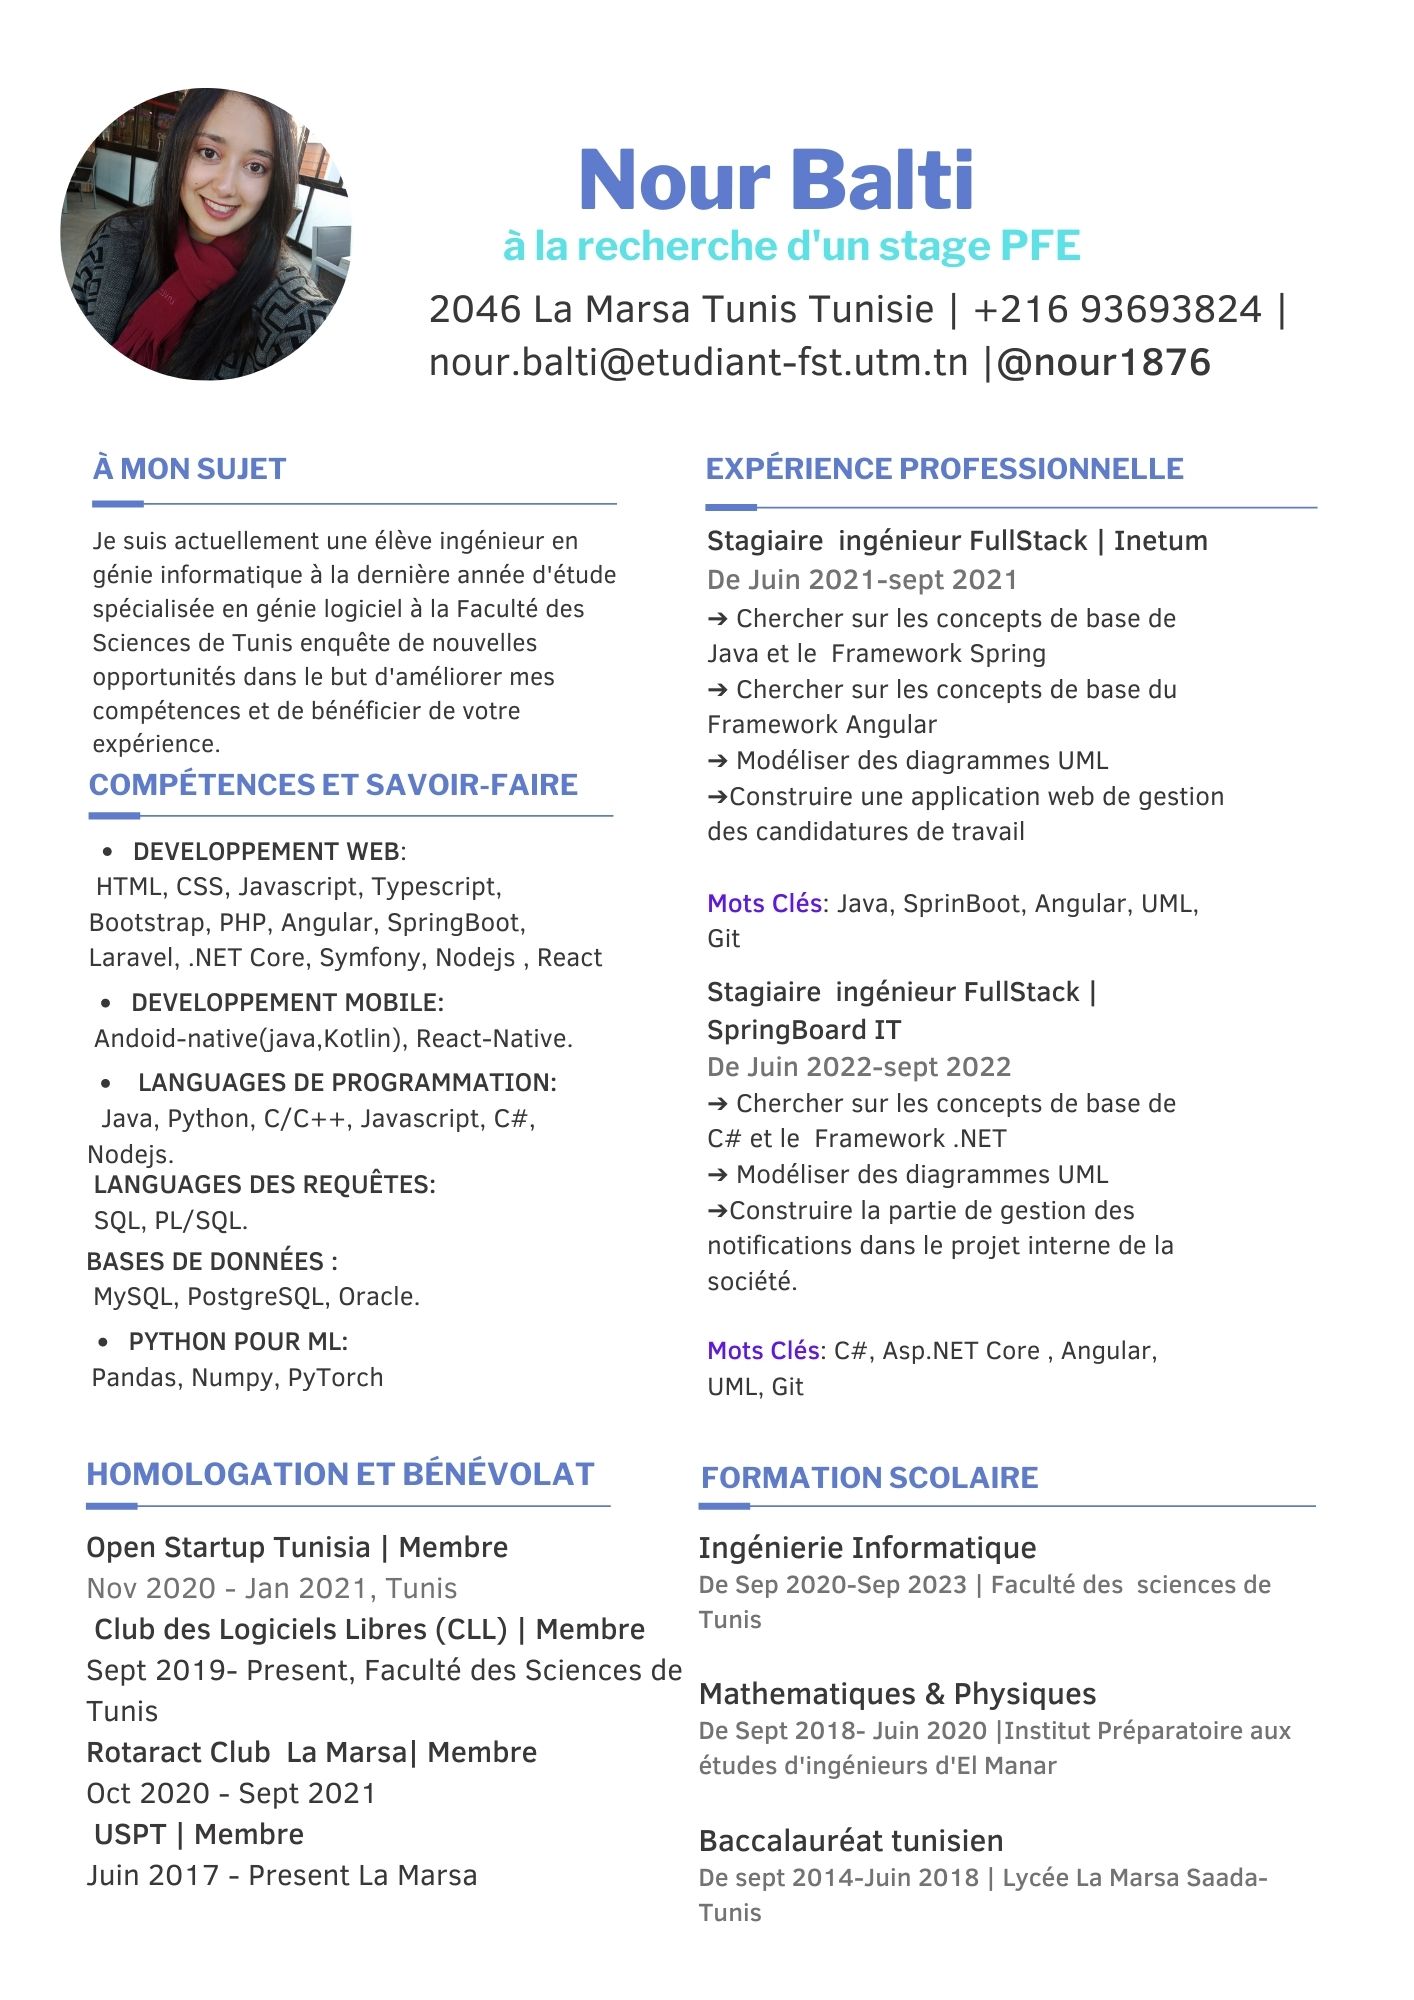 À MON SUJET

 

Je suis actuellement une élève ingénieur en
génie informatique à la dernière année d'étude
spécialisée en génie logiciel à la Faculté des
Sciences de Tunis enquête de nouvelles
opportunités dans le but d'améliorer mes
compétences et de bénéficier de votre
expérience.

COMPÉTENCES ET SAVOIR-FAIRE

 

DEVELOPPEMENT WEB:

HTML, CSS, Javascript, Typescript,
Bootstrap, PHP, Angular, SpringBoot,
Laravel, .NET Core, Symfony, Nodejs , React
« DEVELOPPEMENT MOBILE:
Andoid-native(java,Kotlin), React-Native.

« LANGUAGES DE PROGRAMMATION:
Java, Python, C/C++, Javascript, C#,

Nodejs. .
LANGUAGES DES REQUETES:

SQL, PL/SQL.
BASES DE DONNEES :
MySQL, PostgreSQL, Oracle.

« PYTHON POUR ML:
Pandas, Numpy, PyTorch

HOMOLOGATION ET BÉNÉVOLAT

 

Open Startup Tunisia | Membre

Nov 2020 - Jan 2021, Tunis

Club des Logiciels Libres (CLL) | Membre
Sept 2019- Present, Faculté des Sciences de
Tunis

Rotaract Club La Marsa| Membre

Oct 2020 - Sept 2021

USPT | Membre

Juin 2017 - Present La Marsa

Nour Balti

2046 La Marsa Tunis Tunisie | +216 93693824 |
nour.balti@etudiant-fst.utm.tn |@nour1876

EXPERIENCE PROFESSIONNELLE
Stagiaire ingénieur FullStack | Inetum
De Juin 2021-sept 2021

&gt; Chercher sur les concepts de base de
Java et le Framework Spring

=&gt; Chercher sur les concepts de base du
Framework Angular

&gt; Modéliser des diagrammes UML
&gt;Construire une application web de gestion
des candidatures de travail

Mots Clés: Java, SprinBoot, Angular, UML,
Git

Stagiaire ingénieur FullStack |
SpringBoard IT

De Juin 2022-sept 2022

= Chercher sur les concepts de base de
C# et le Framework .NET

- Modéliser des diagrammes UML
&gt;Construire la partie de gestion des
notifications dans le projet interne de la
société.

Mots Clés: C#, Asp.NET Core , Angular,
UML, Git

FORMATION SCOLAIRE

 

Ingénierie Informatique
De Sep 2020-Sep 2023 | Faculté des sciences de
Tunis

Mathematiques &amp; Physiques
De Sept 2018- Juin 2020 [Institut Préparatoire aux
études d'ingénieurs d'El Manar

Baccalauréat tunisien
De sept 2014-Juin 2018 | Lycée La Marsa Saada-
Tunis